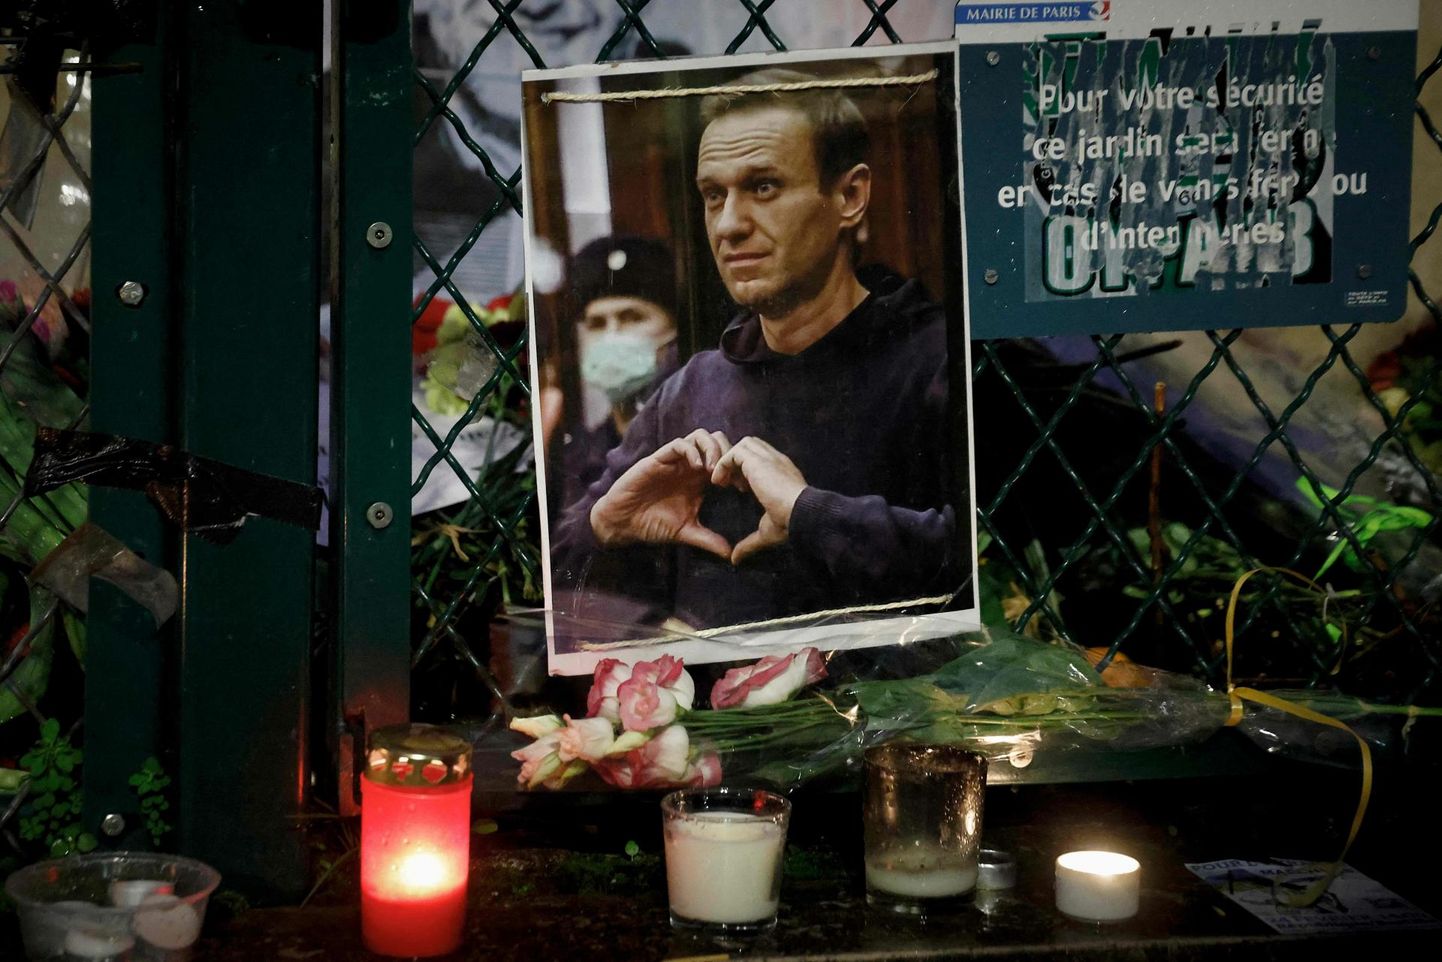 Vanglas tapetud Vene opositsiooniliider Akeksei Navalnõile pühendatud mälestusmärk Pariisis. 